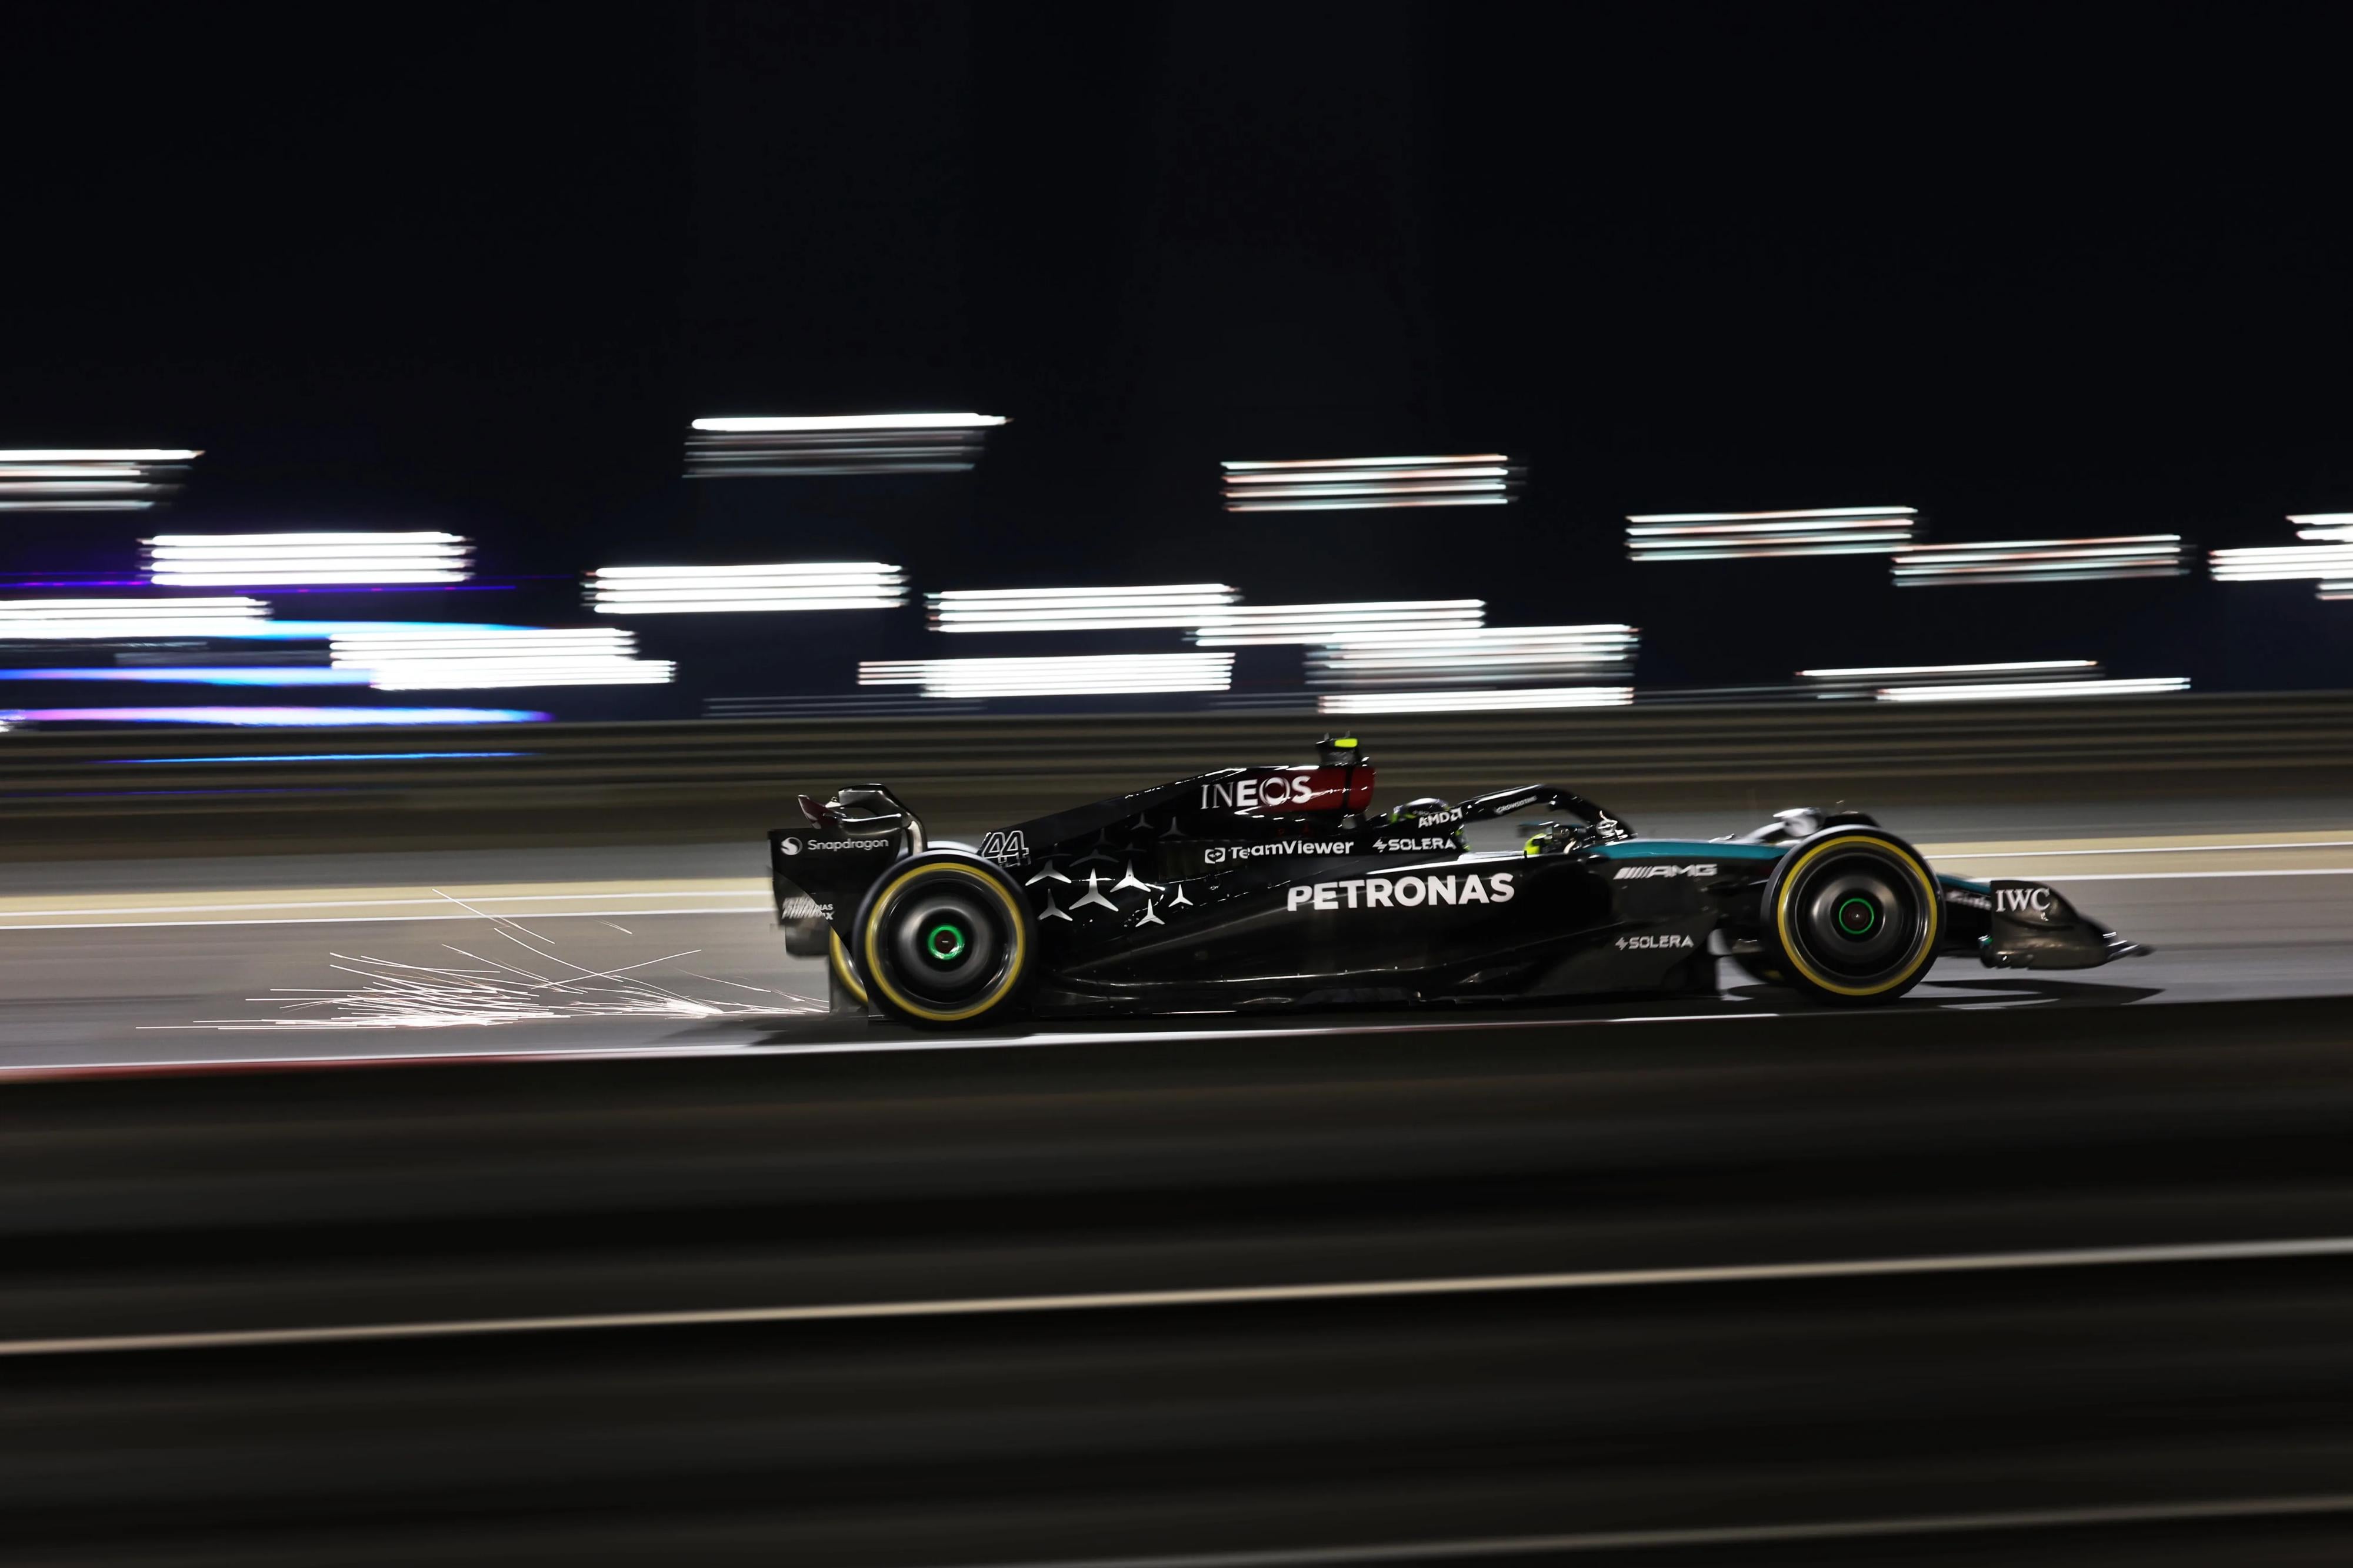 General 4000x2666 Formula 1 Mercedes F1 motorsport side view sparks motion blur race cars blurred lights vehicle driver